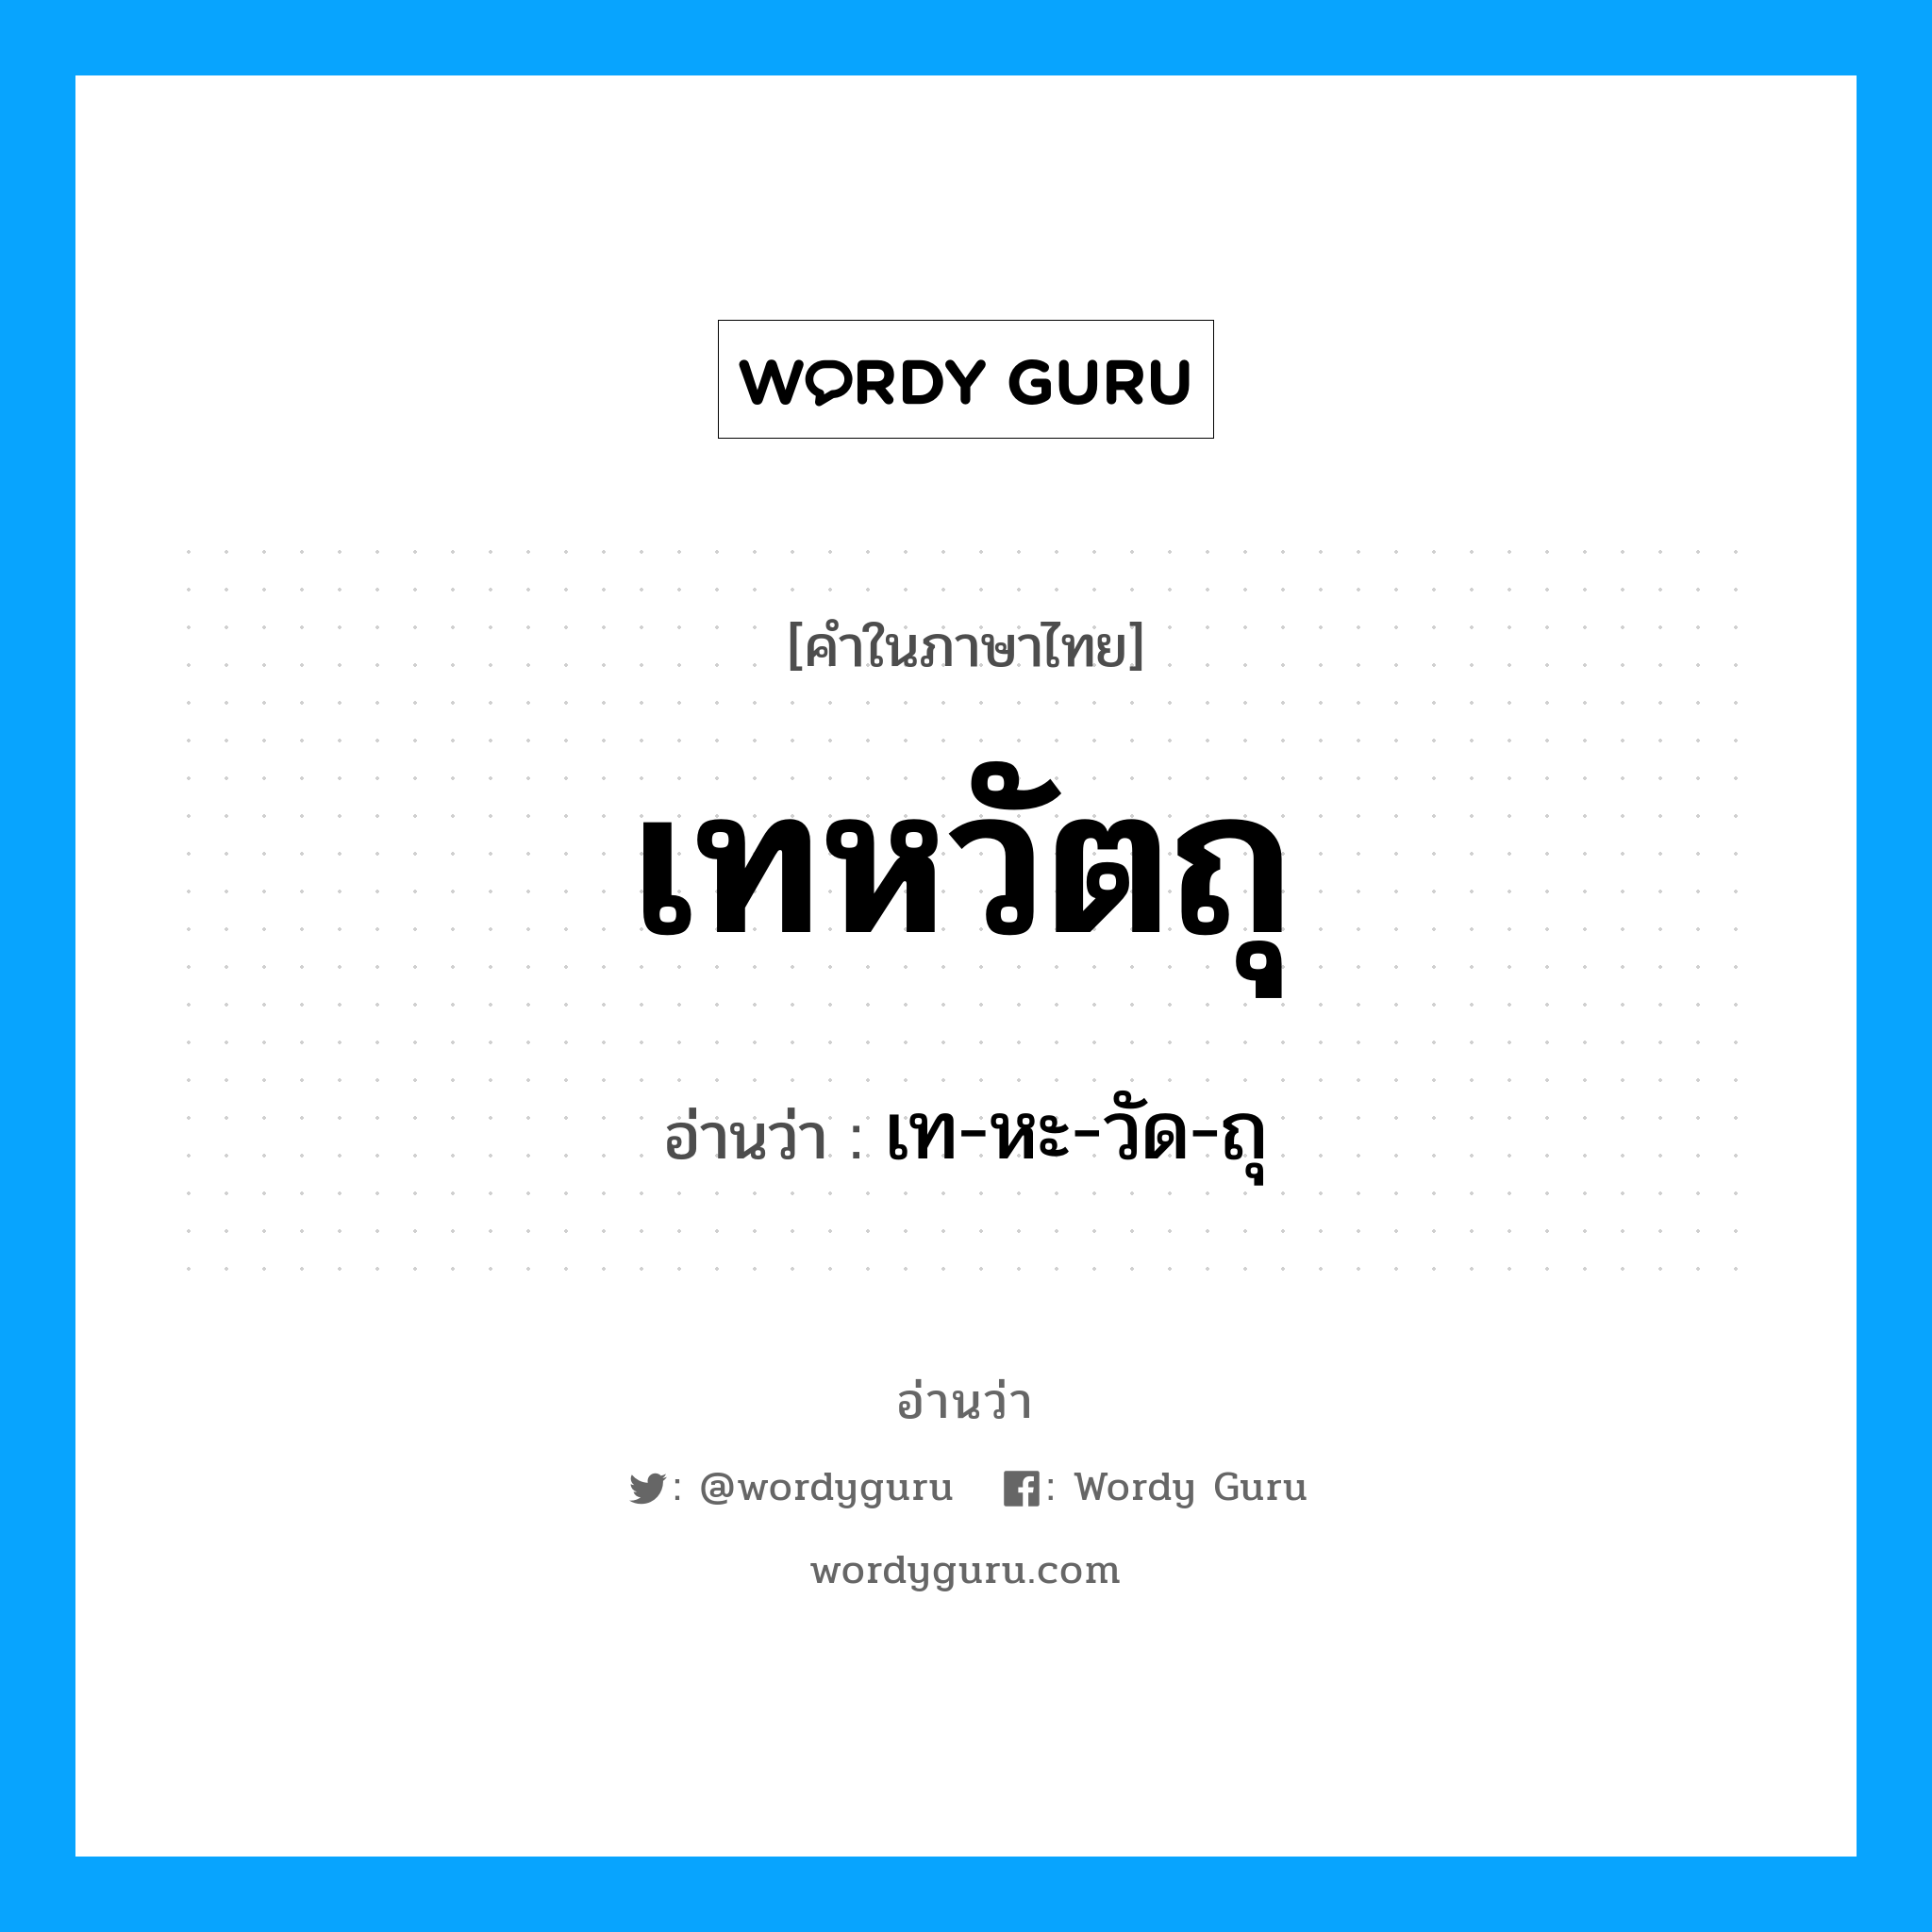 เท-หะ-วัด-ถุ เป็นคำอ่านของคำไหน?, คำในภาษาไทย เท-หะ-วัด-ถุ อ่านว่า เทหวัตถุ